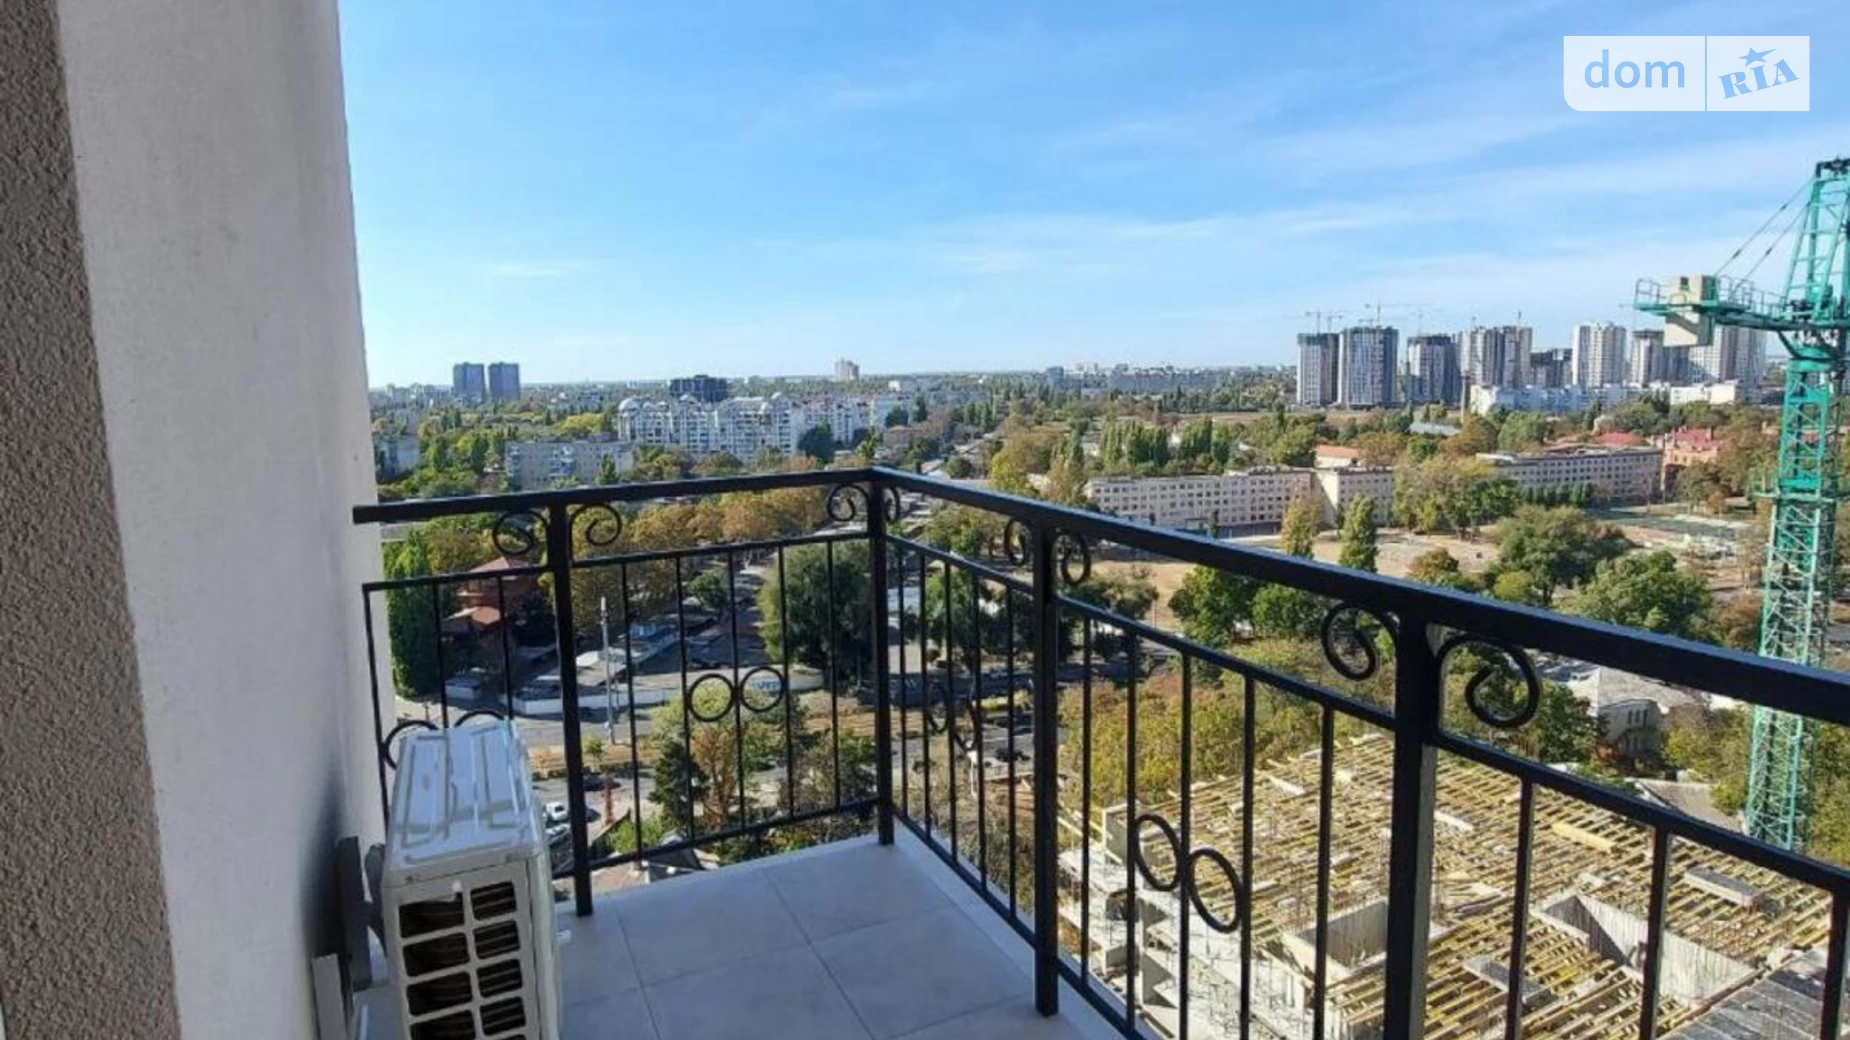 Продается undefined-комнатная квартира  кв. м в Одессе, Фонтанская дор., 25 корпус 1